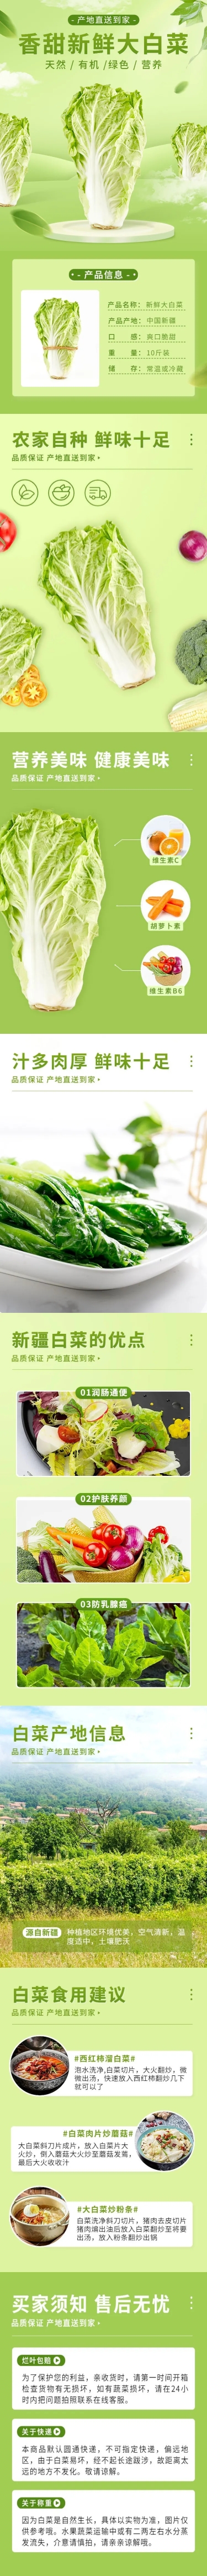 电商食品蔬菜大白菜详情页预览效果